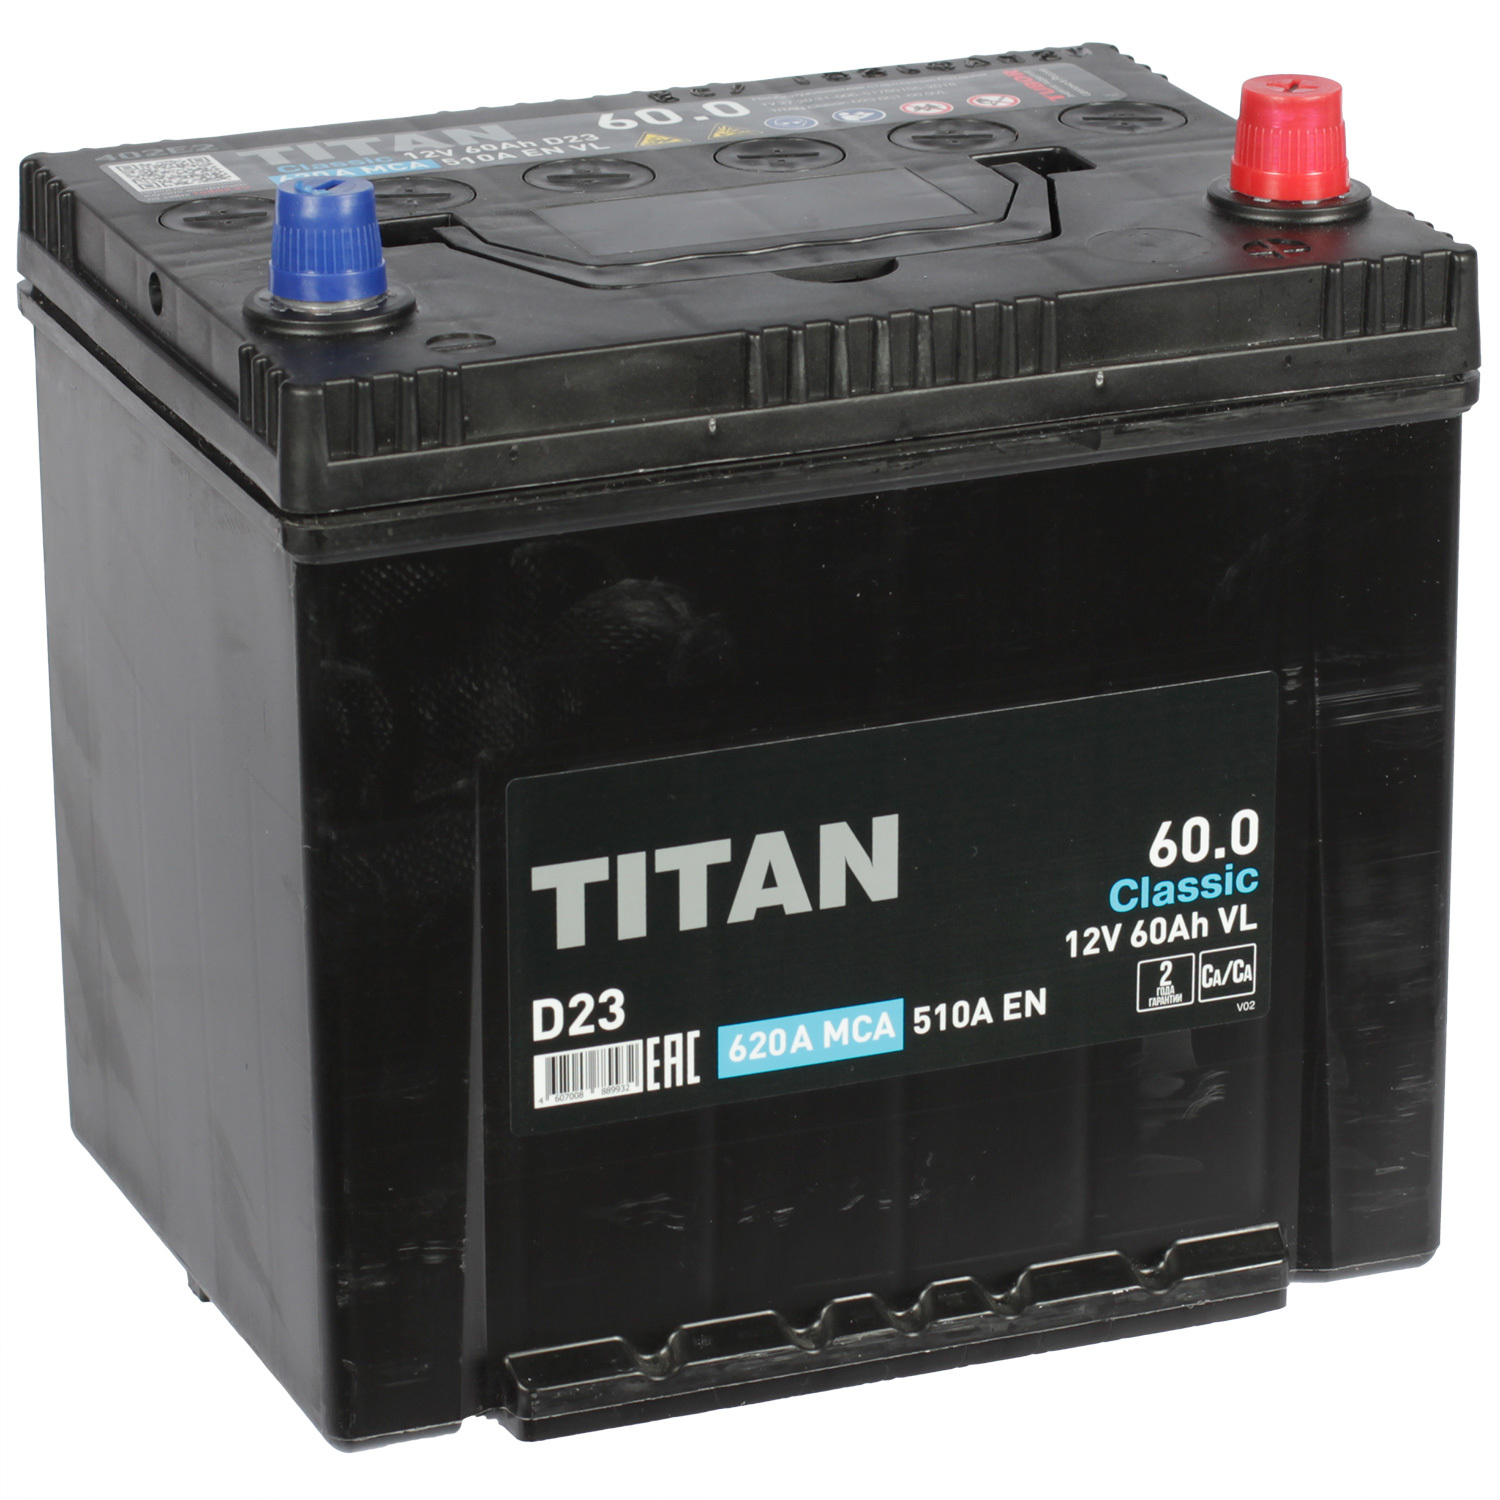 Titan Автомобильный аккумулятор Titan 60 Ач обратная полярность D23L titan автомобильный аккумулятор titan 50 ач обратная полярность b24l